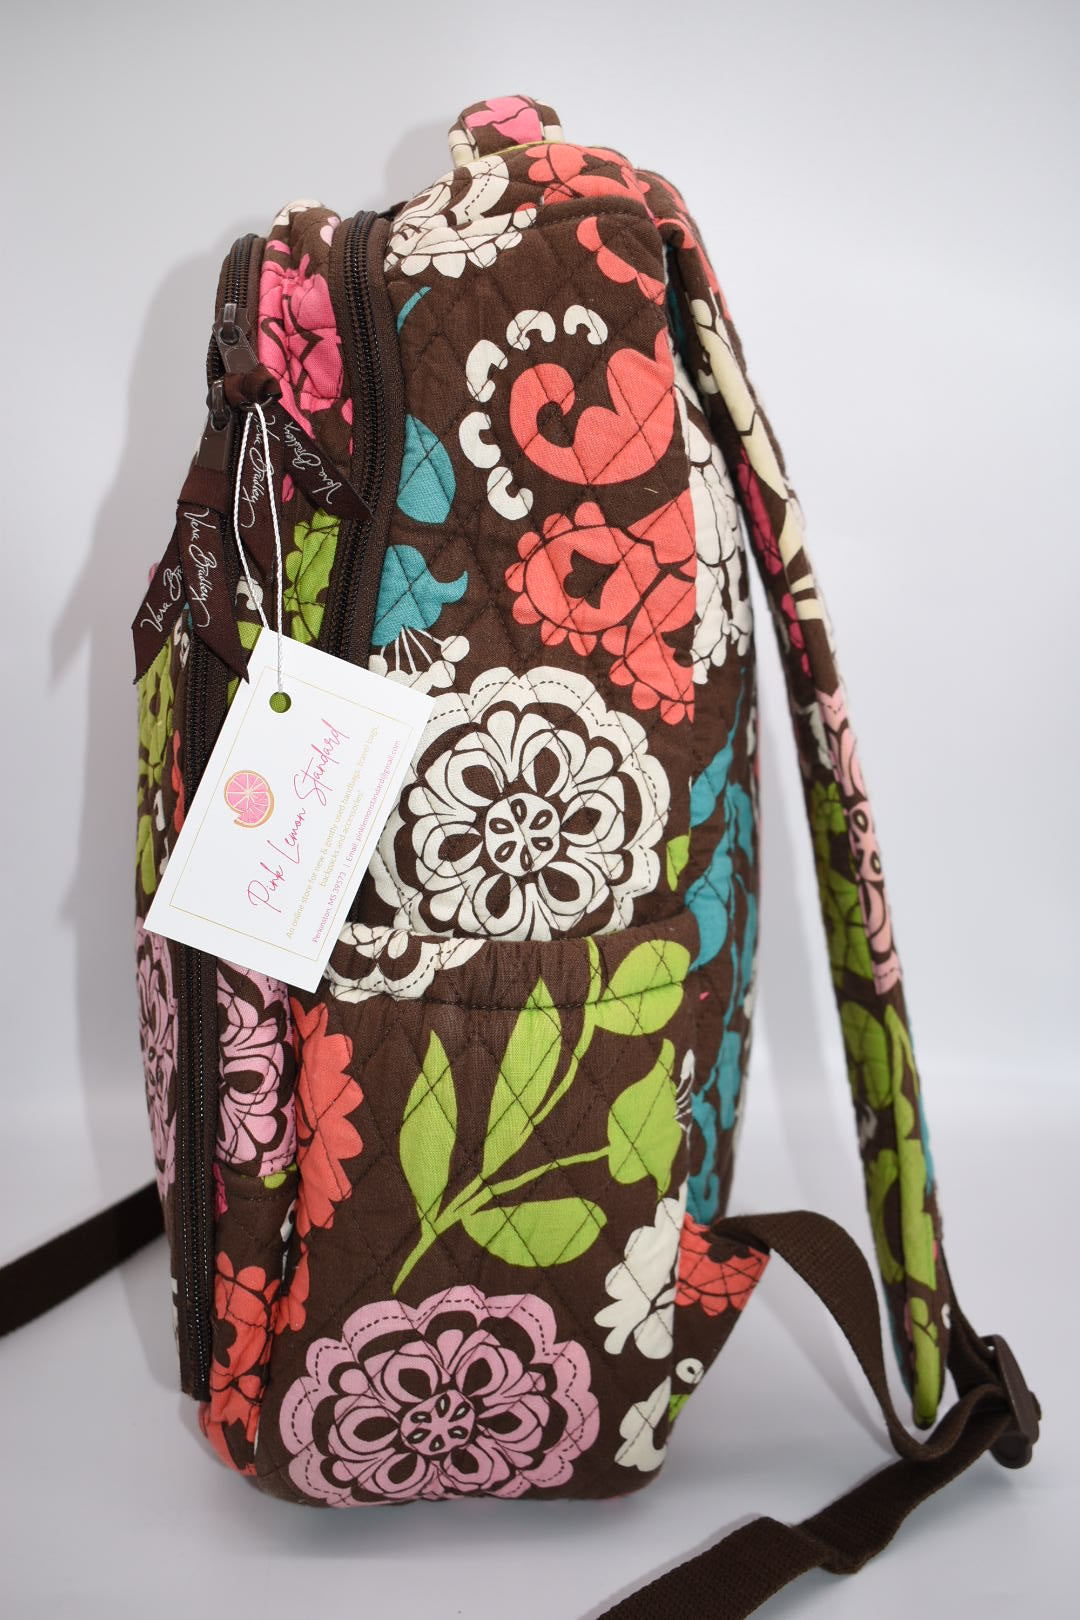 Vera Bradley Backpack Baby Bag in "Lola" Pattern